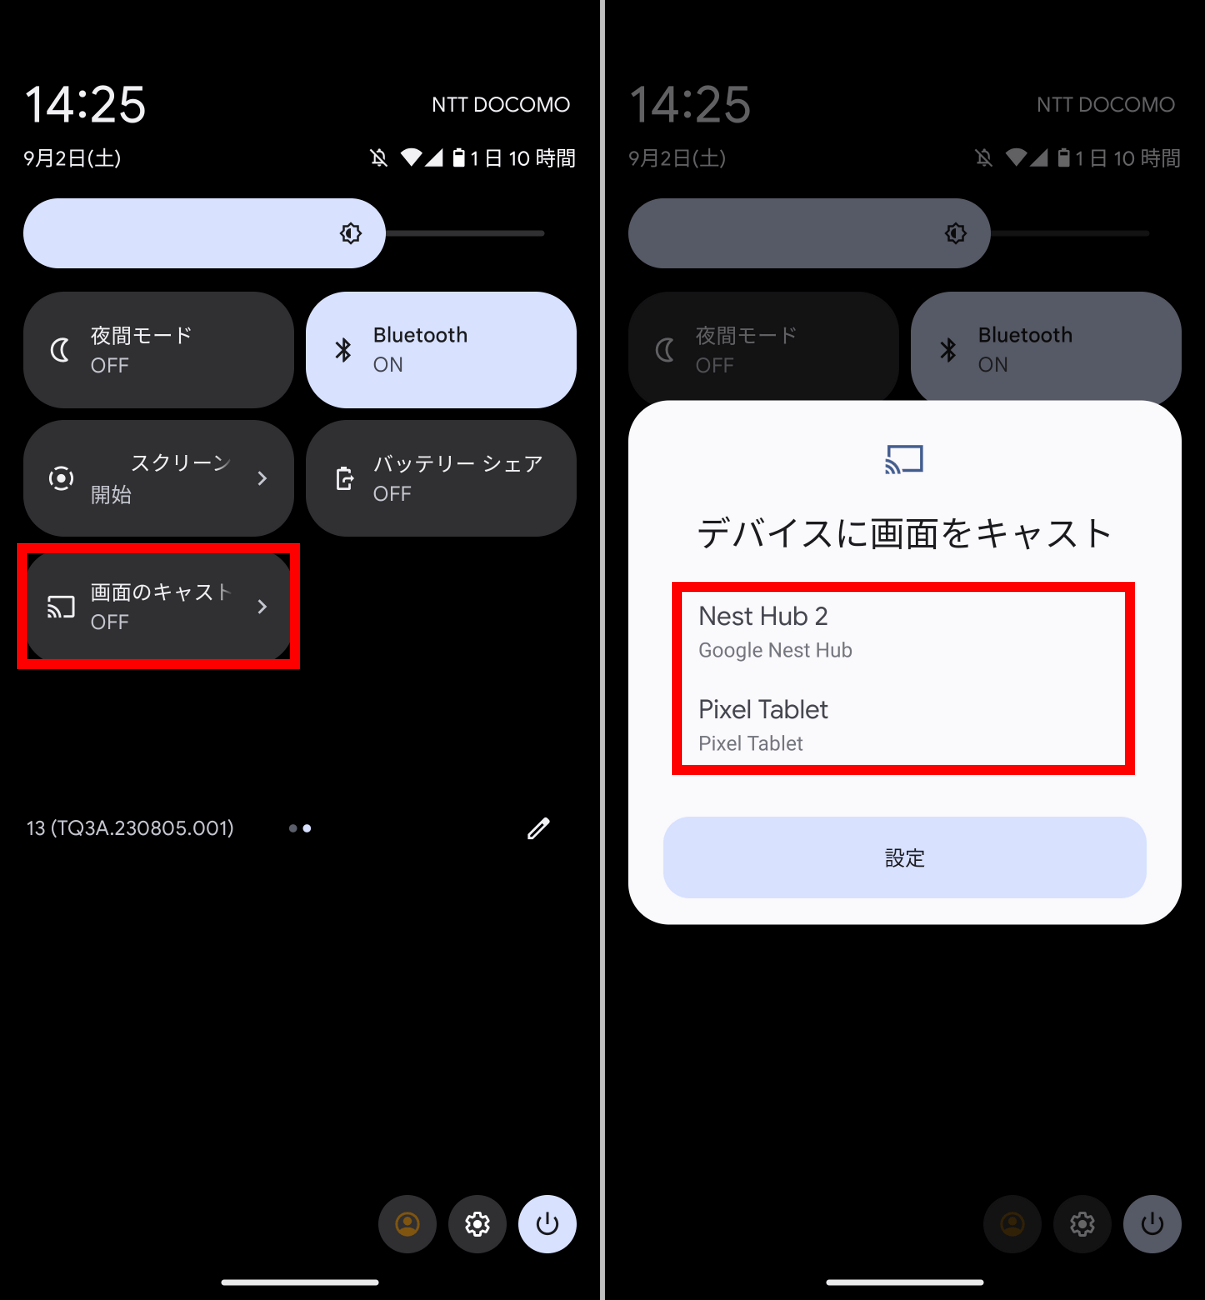 Androidはクイック設定パネルを開き、「画面のキャスト」をタップします（左）次の画面でリストに何らかのデバイスが表示されている場合、タップするだけで画面の出力が行なえます（右）